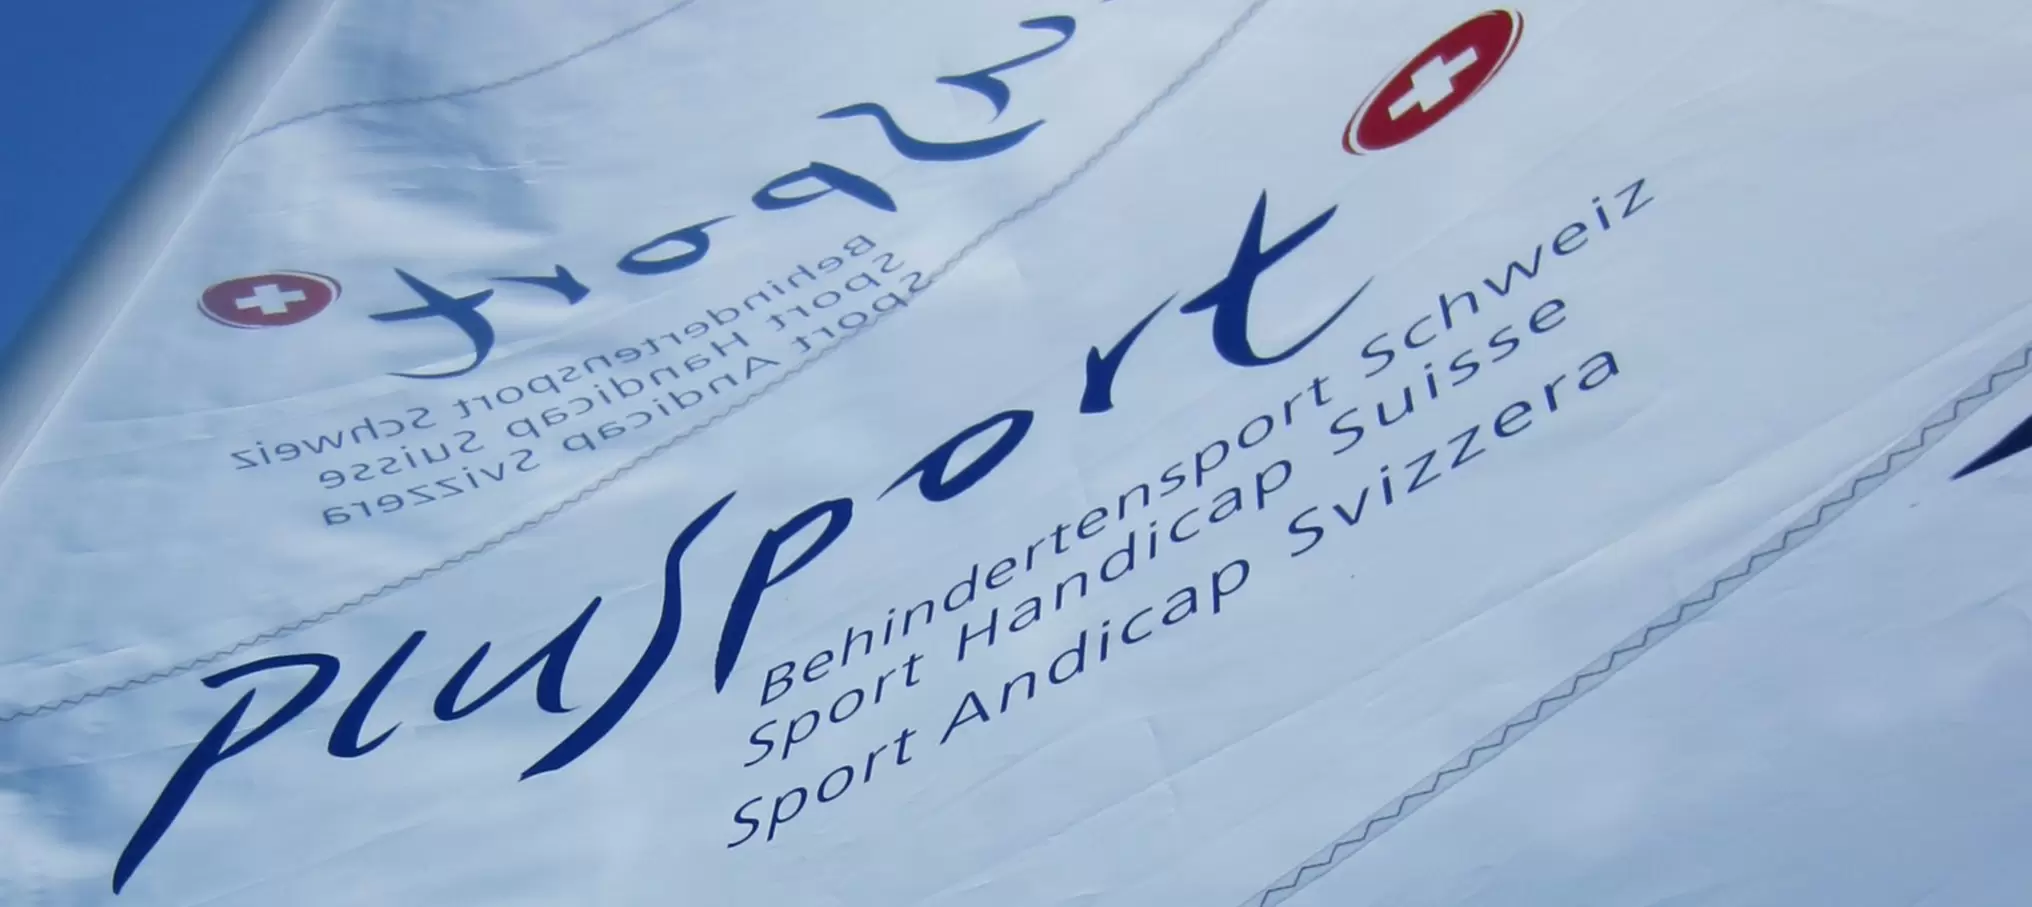 PluSport bietet eine bunte Palette voller trendiger und klassischer Sportangebote für alle